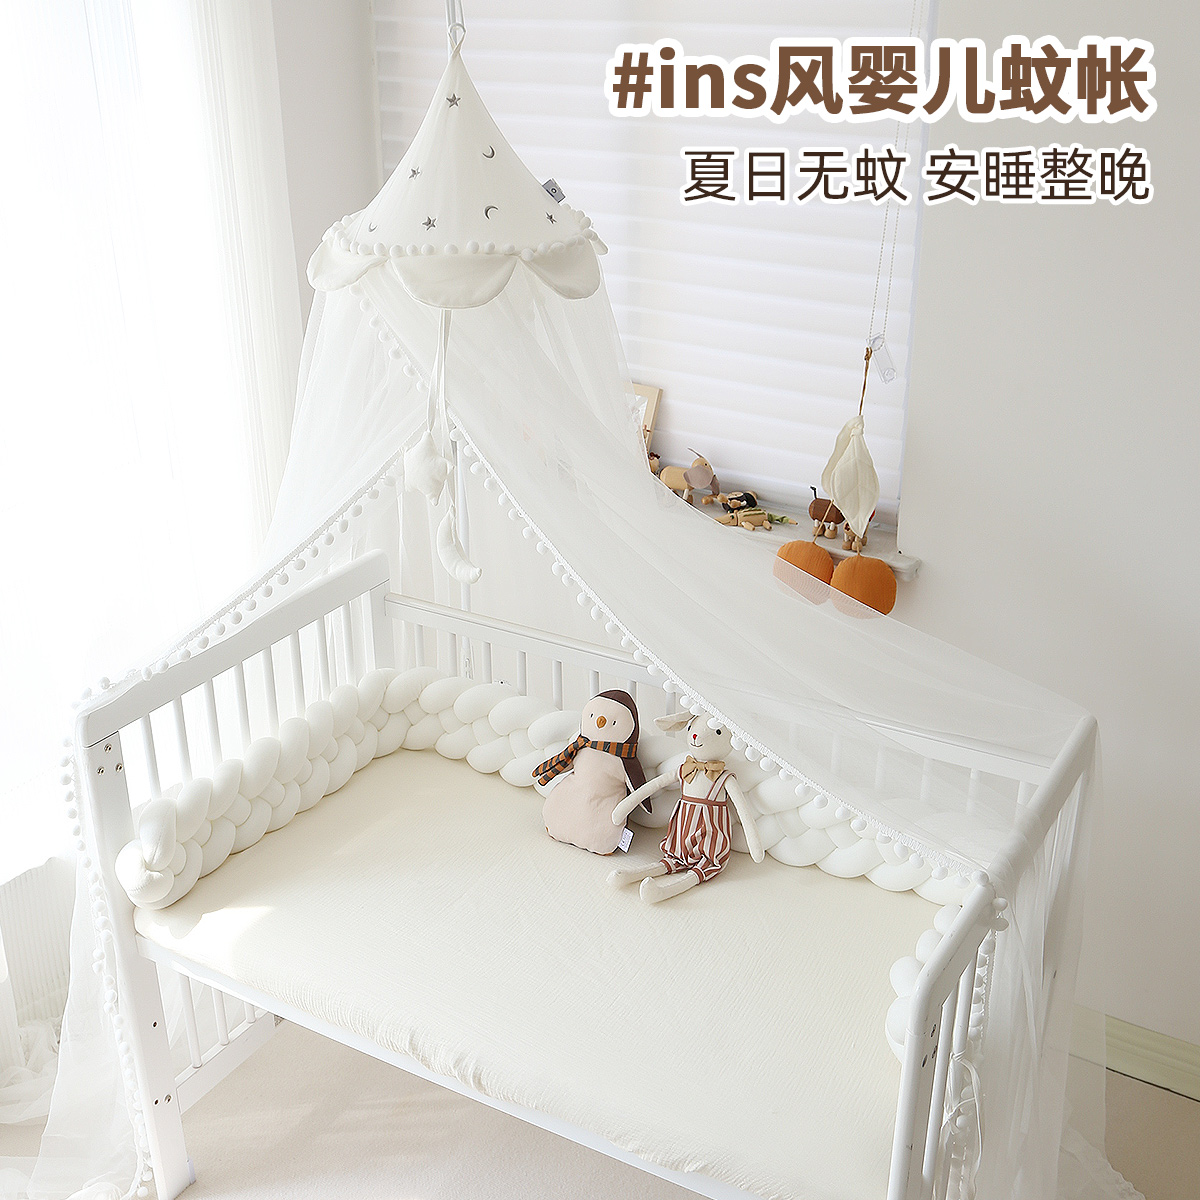 婴儿床蚊帐全罩式通用宝宝专用a类儿童拼接床定制落地支架公主风